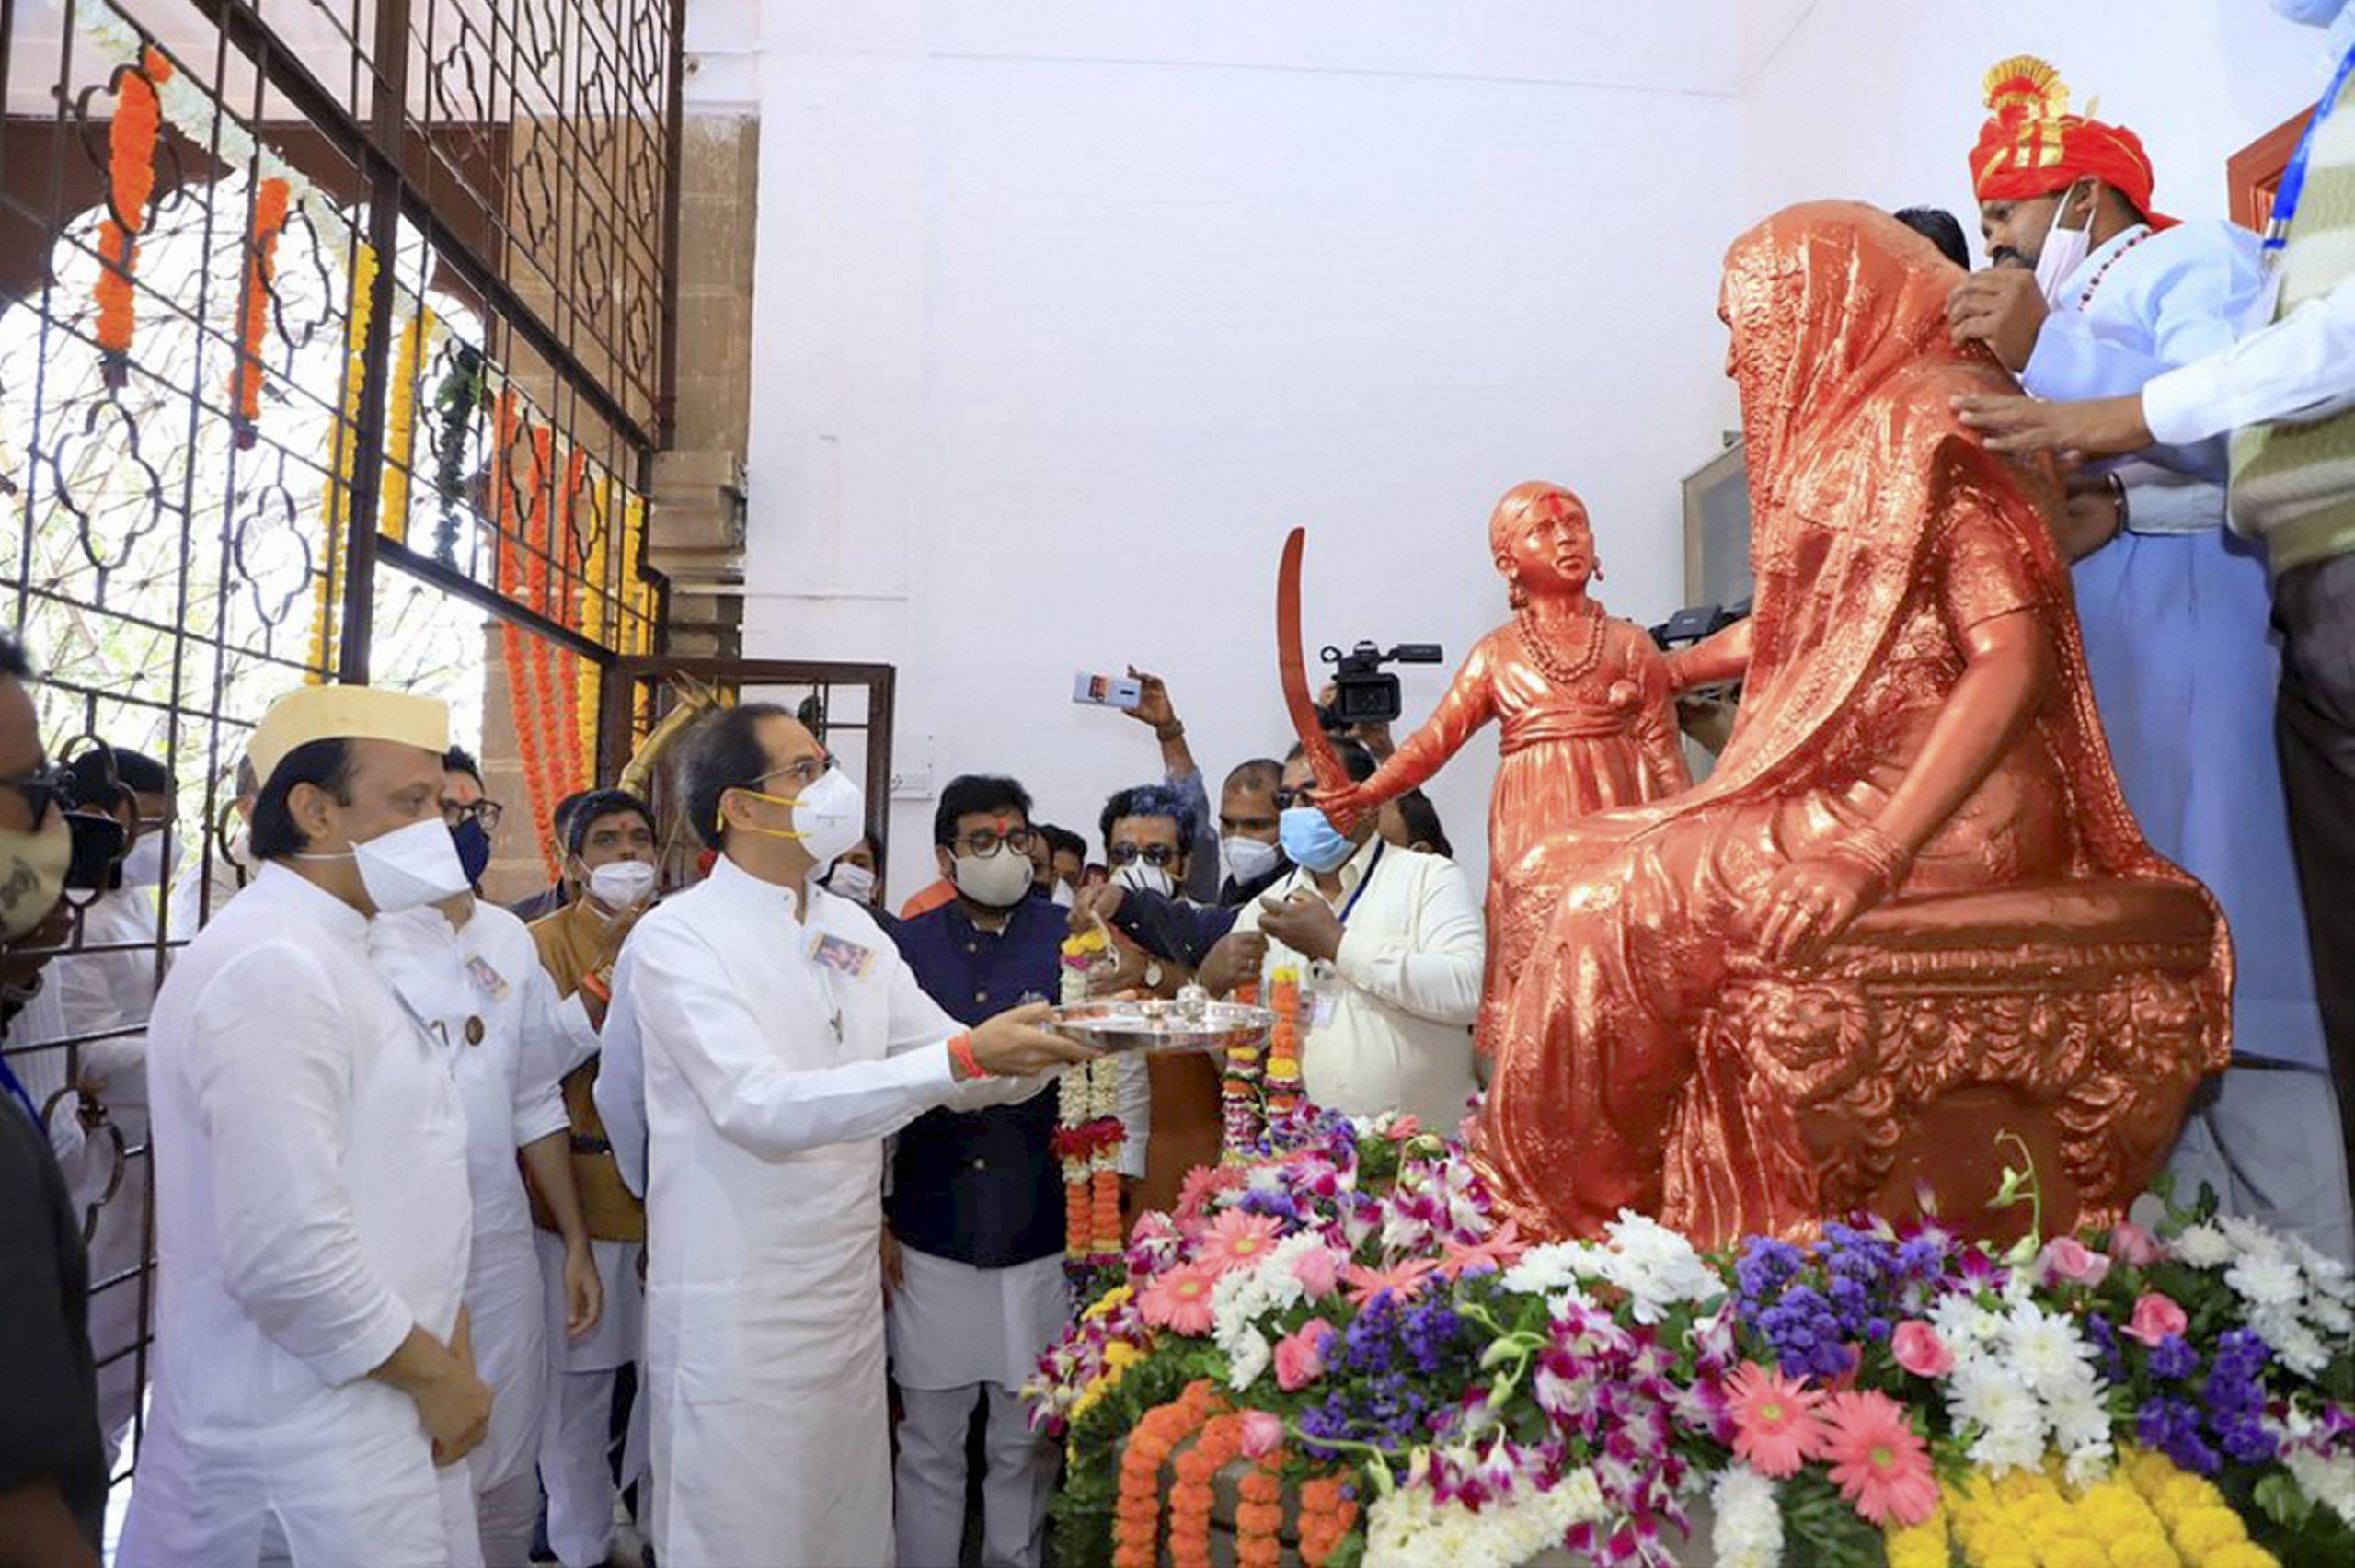 Chhatrapati Shivajis death anniversary: Facts about India’s brave warrior